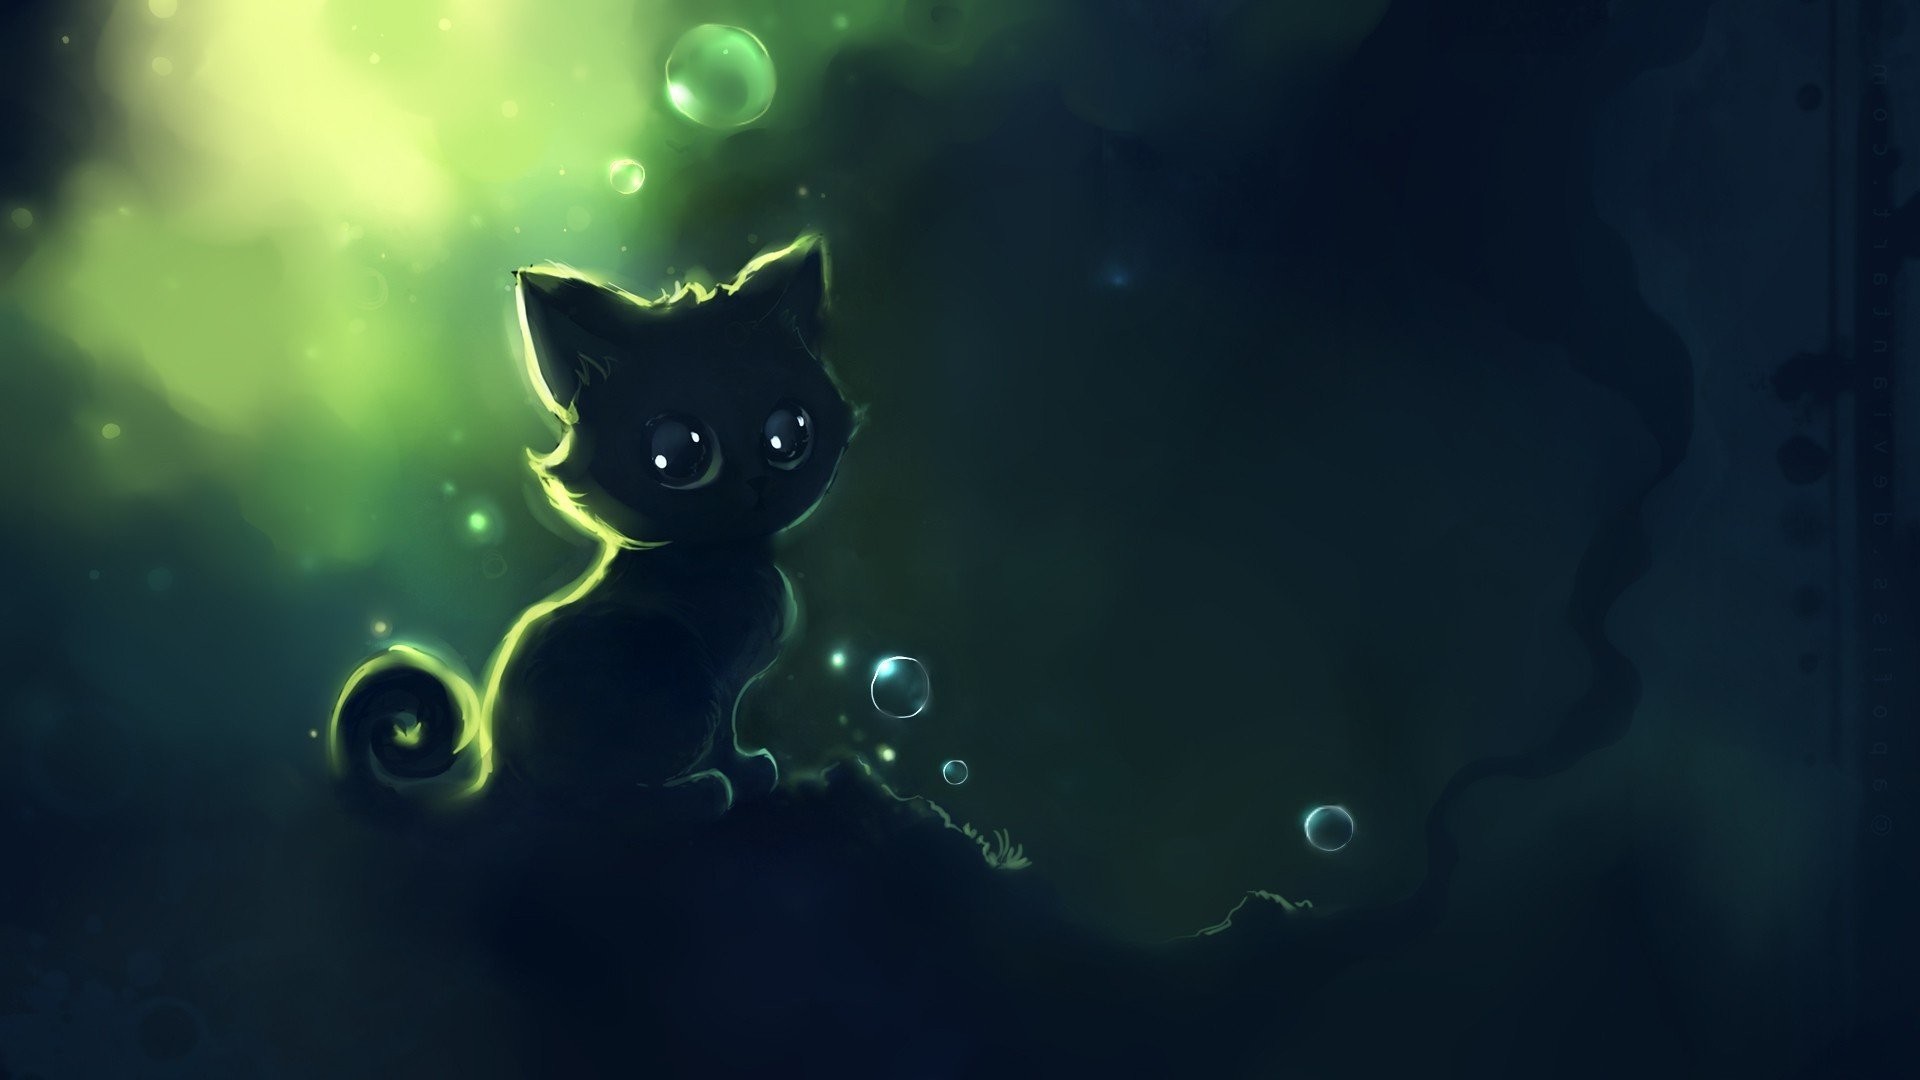 1920x1080 Cute Kitten In The Dark